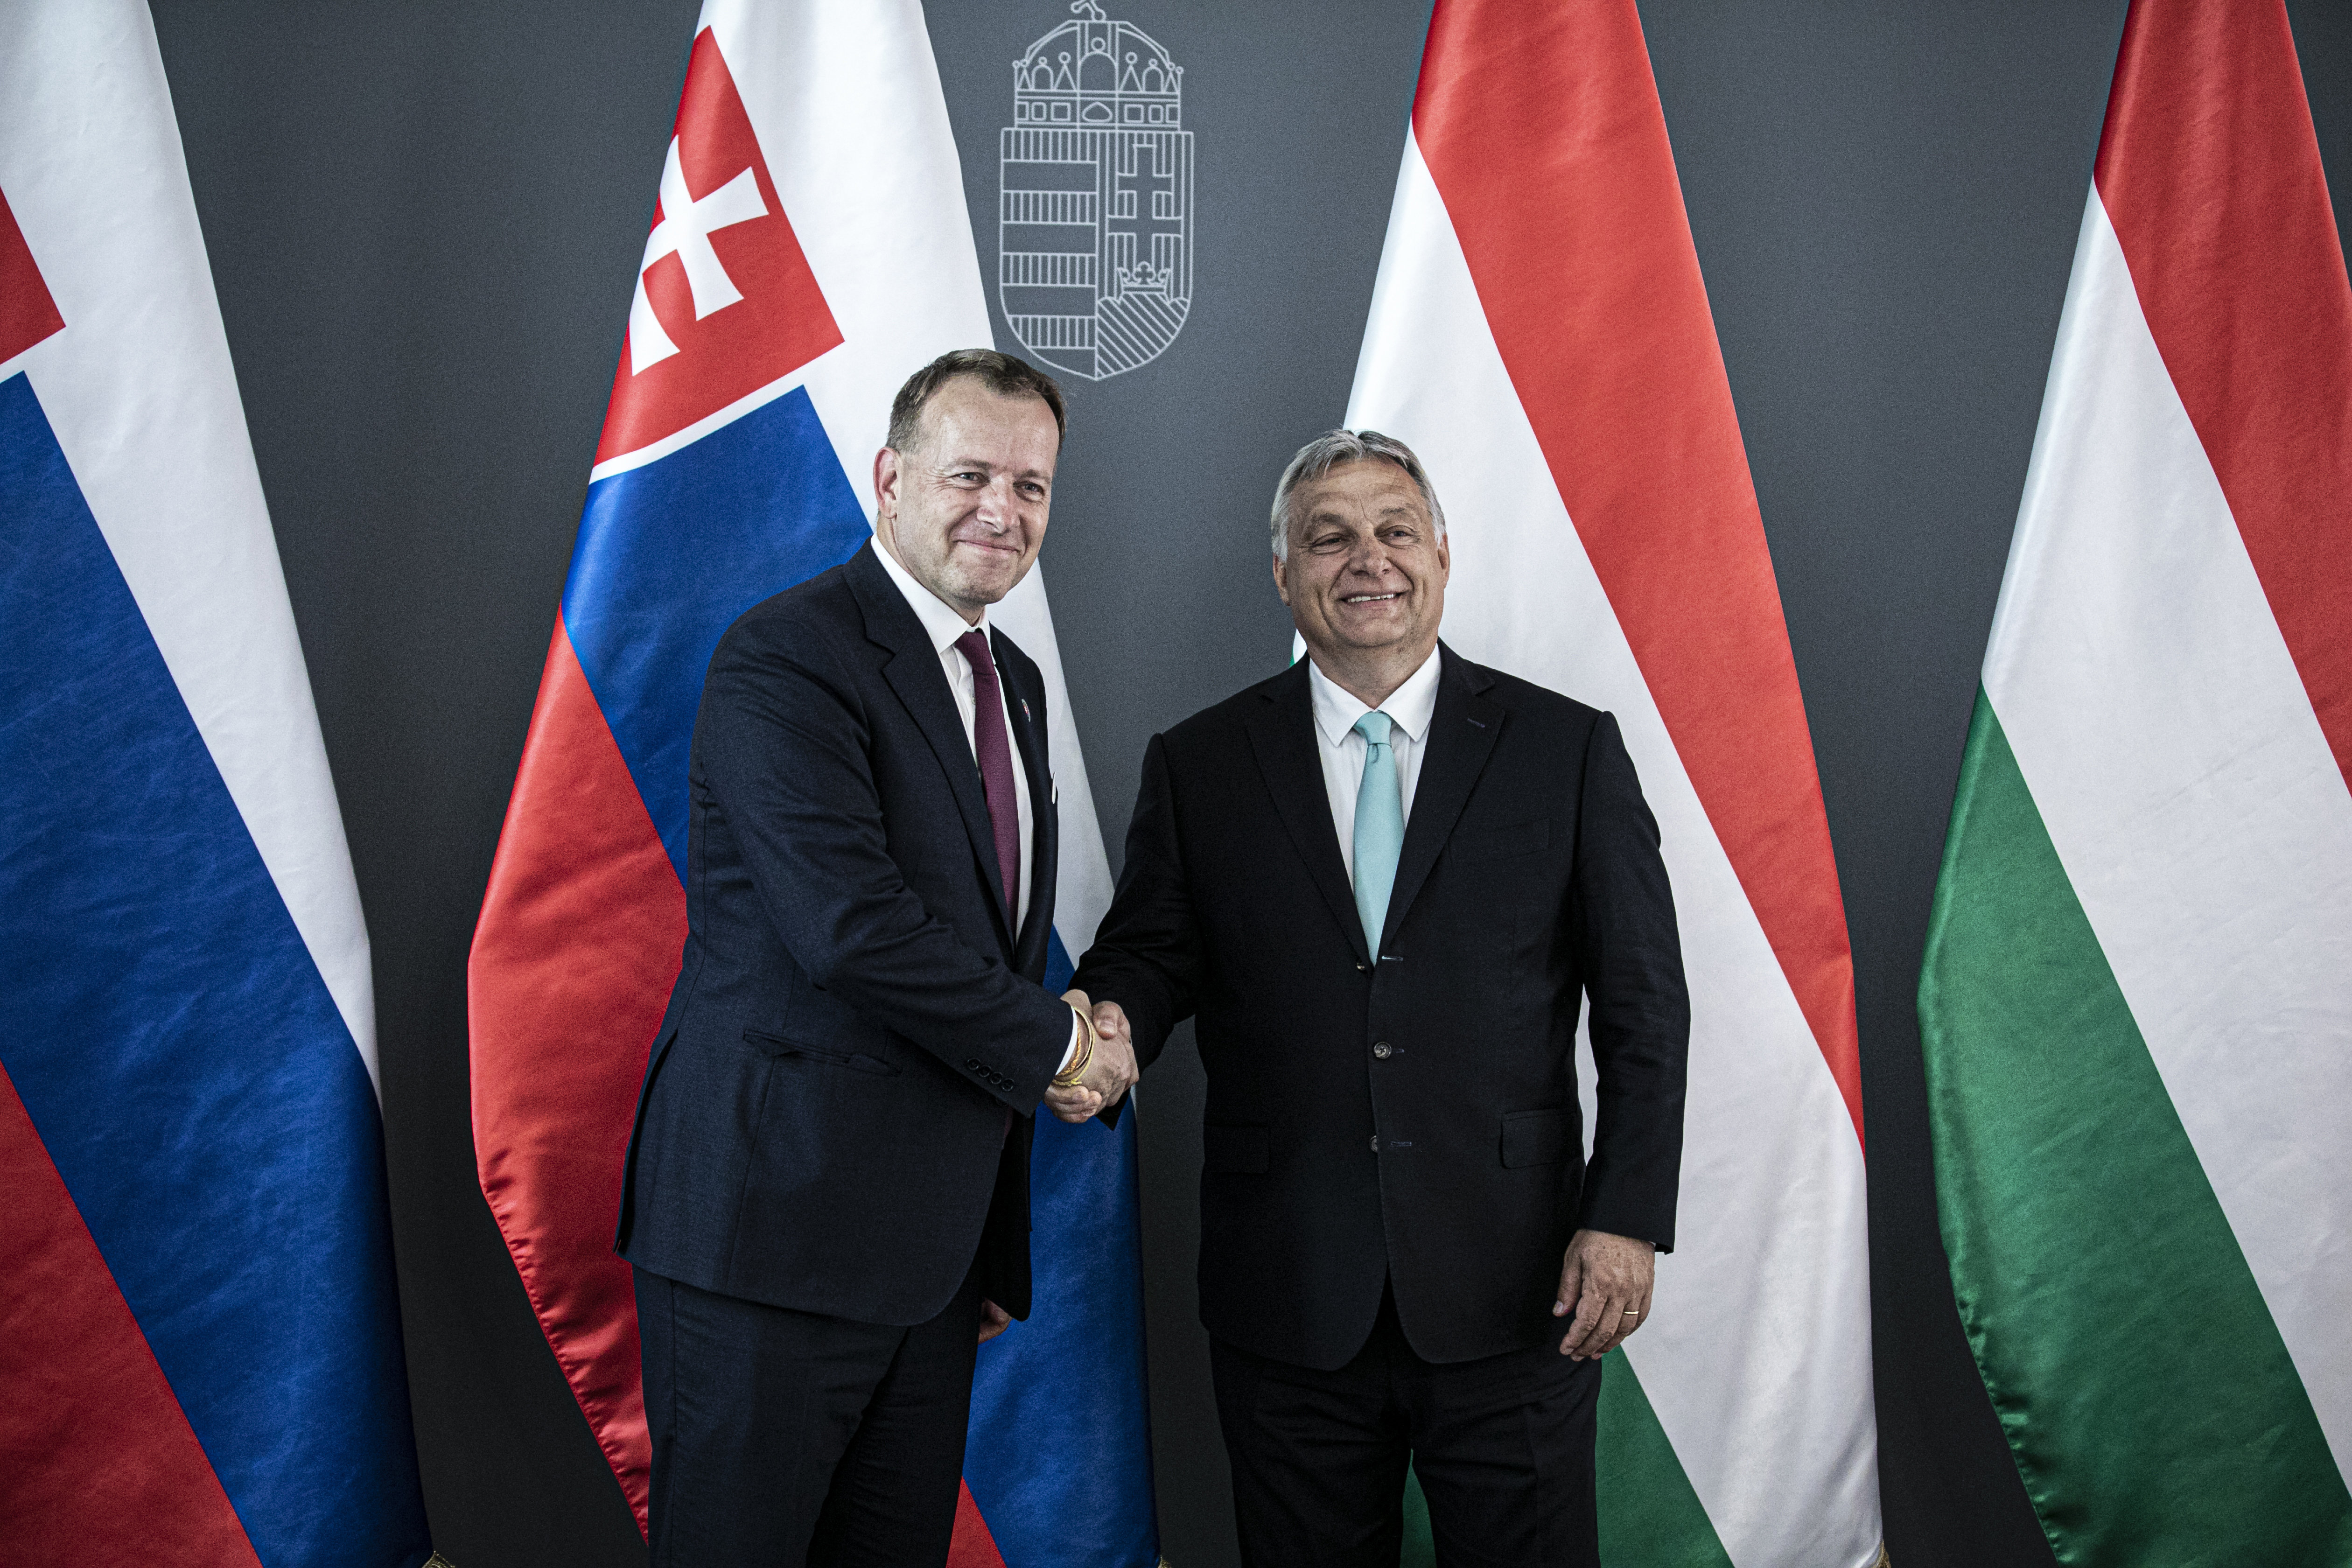 Orbán Putyin segítségével akarja felparcellázni Szlovákiát – mondta a szlovák parlament elnöke